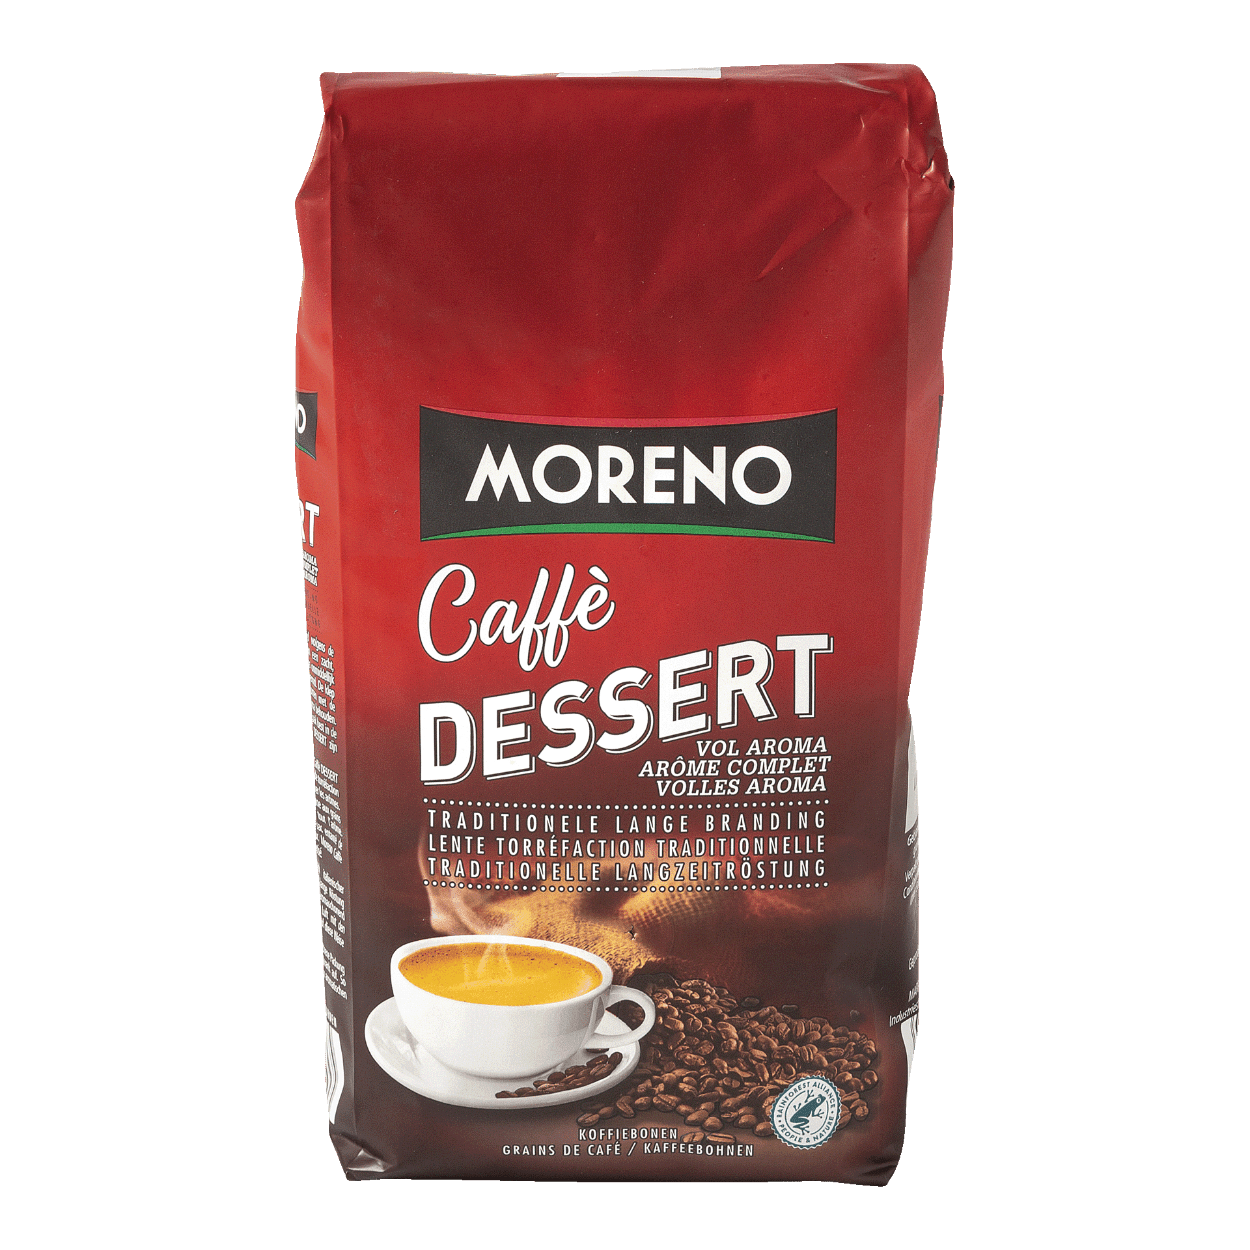 MORENO® Grains de café dessert bon marché chez ALDI